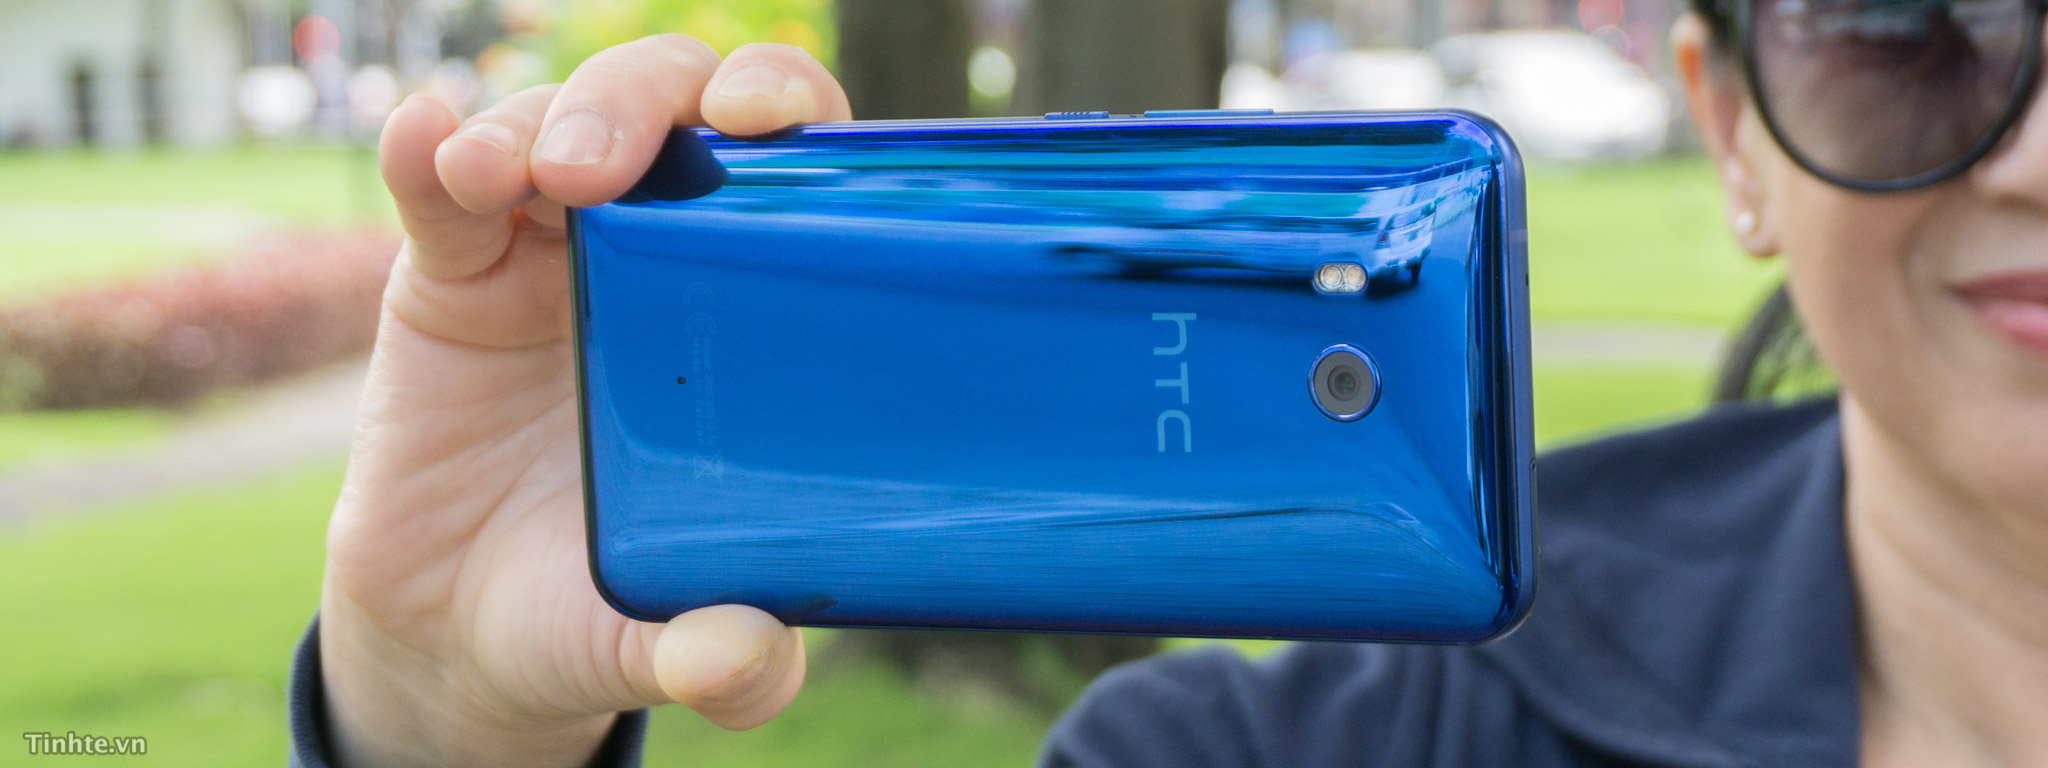 Tính năng bóp của HTC U11: nút chụp ảnh quay trở lại theo cách bạn không ngờ tới